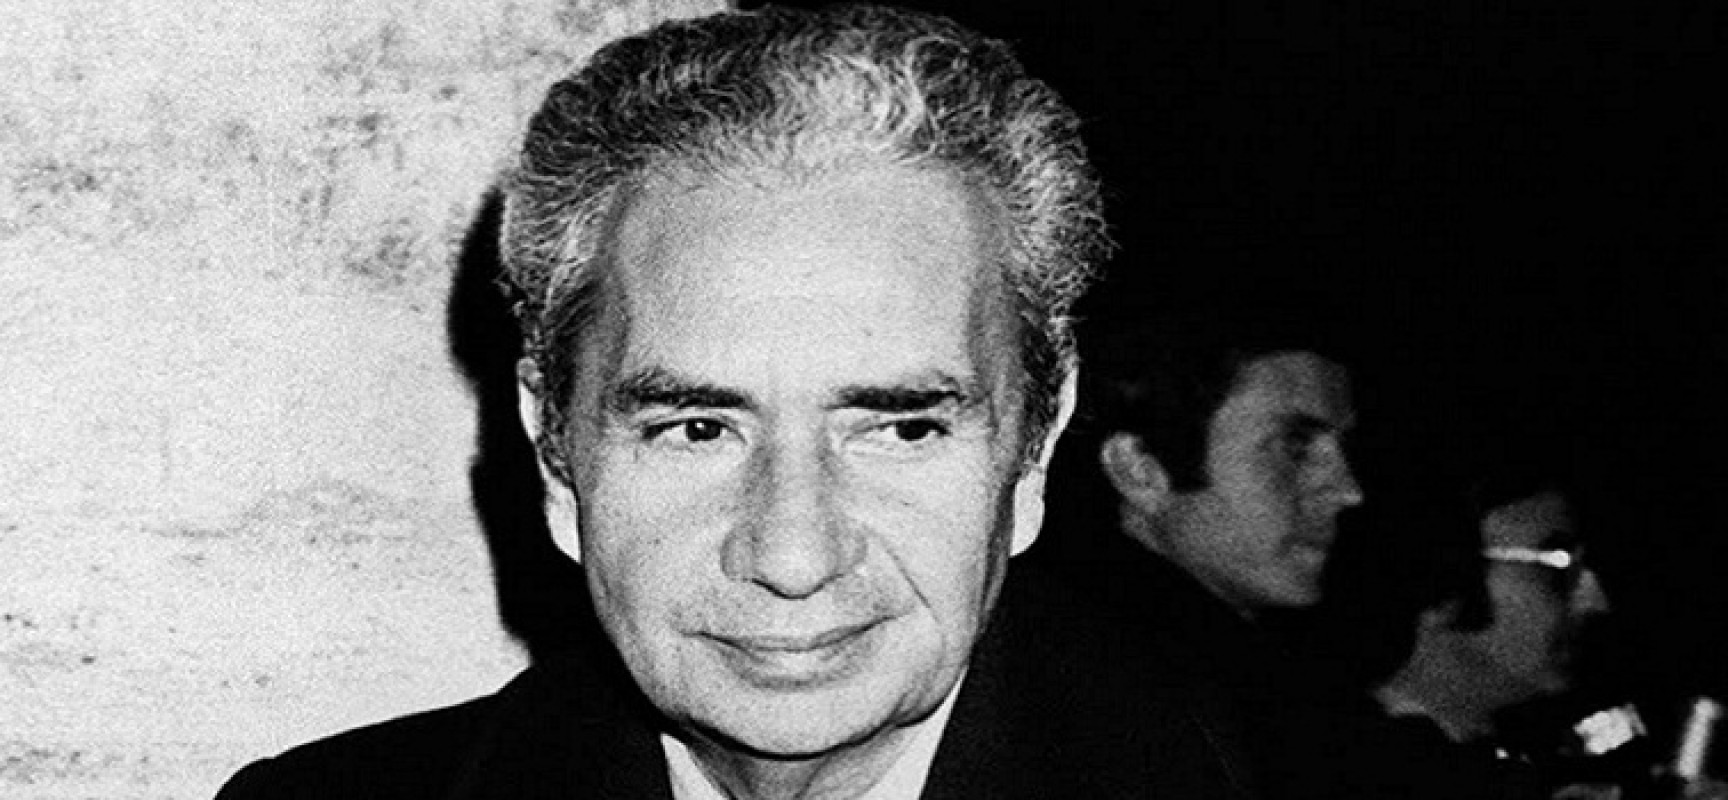 Pd Bisceglie: “Aldo Moro stava lavorando per insediare nel nostro Paese una democrazia dell’alternanza”